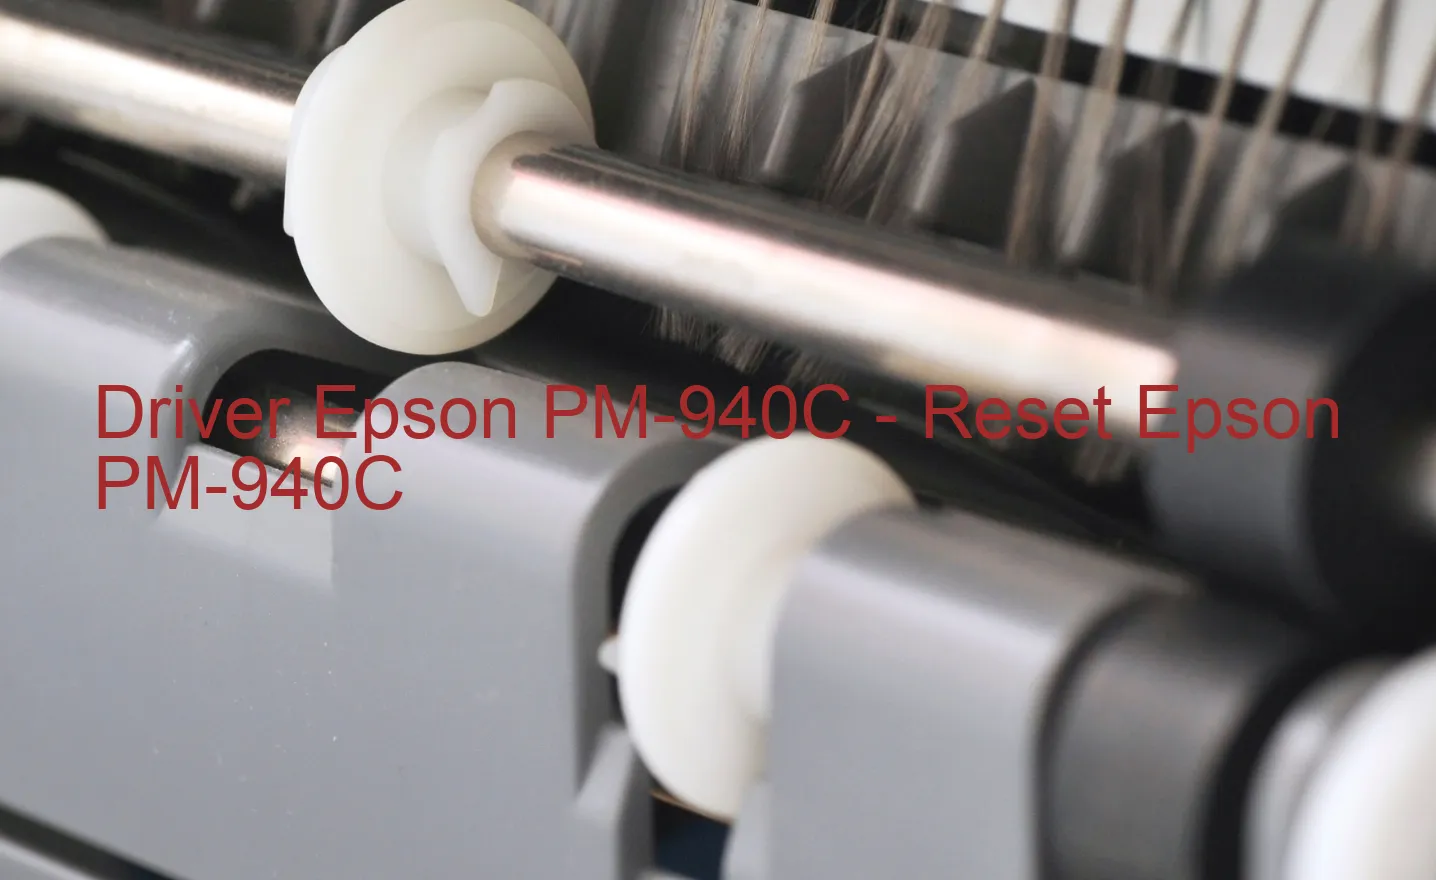 Epson PM-940Cのドライバー、Epson PM-940Cのリセットソフトウェア